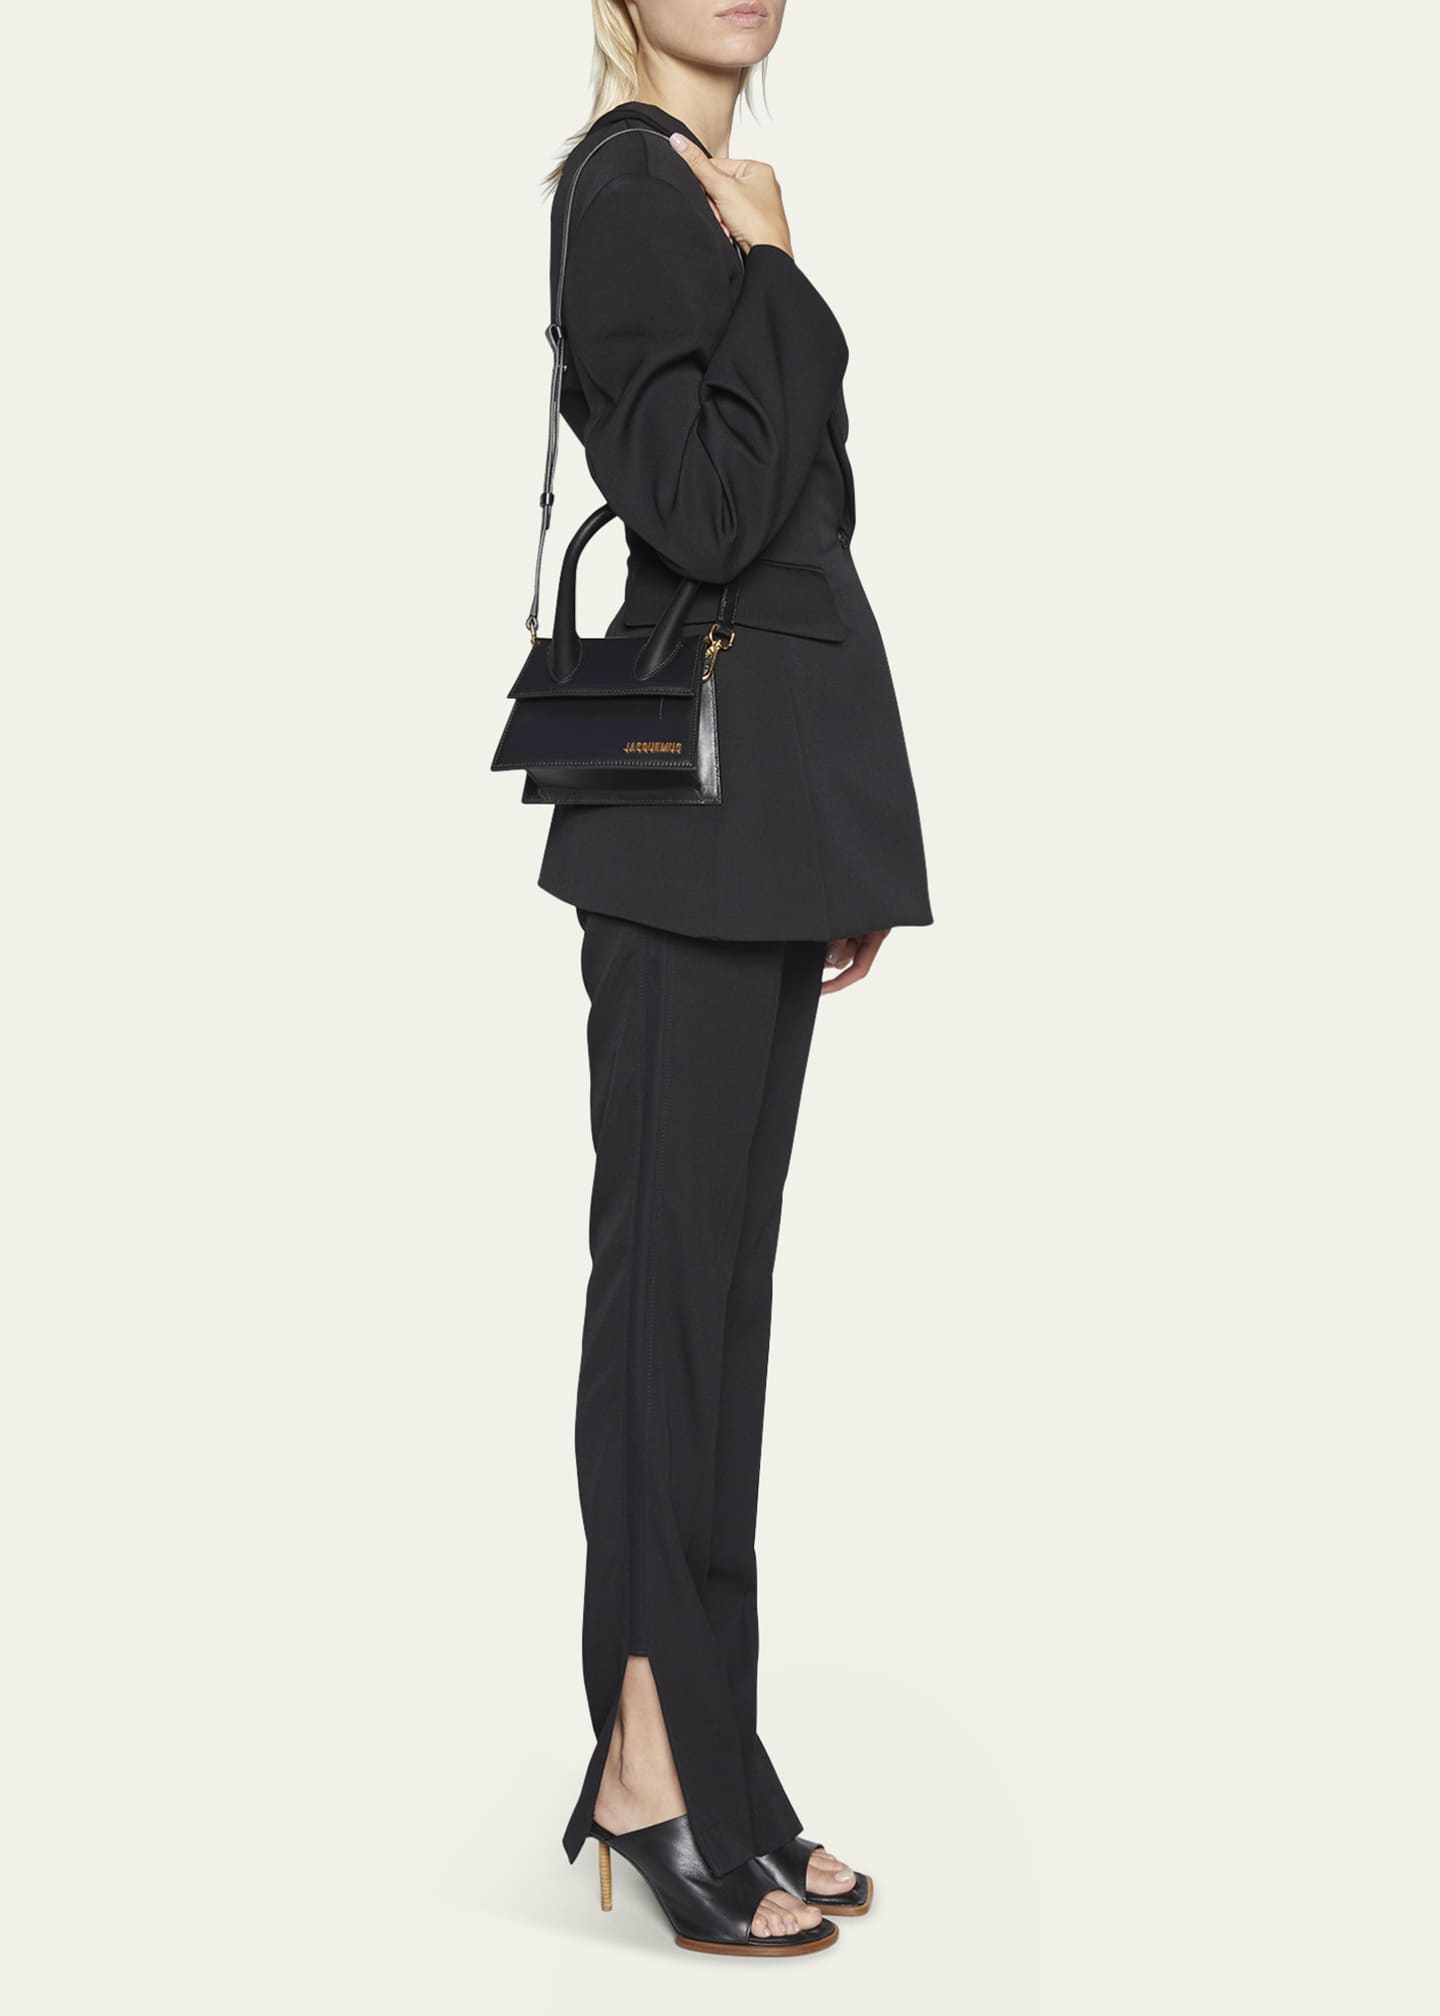 Le Chiquito Moyen Shoulder Bag in Black Jacquemus